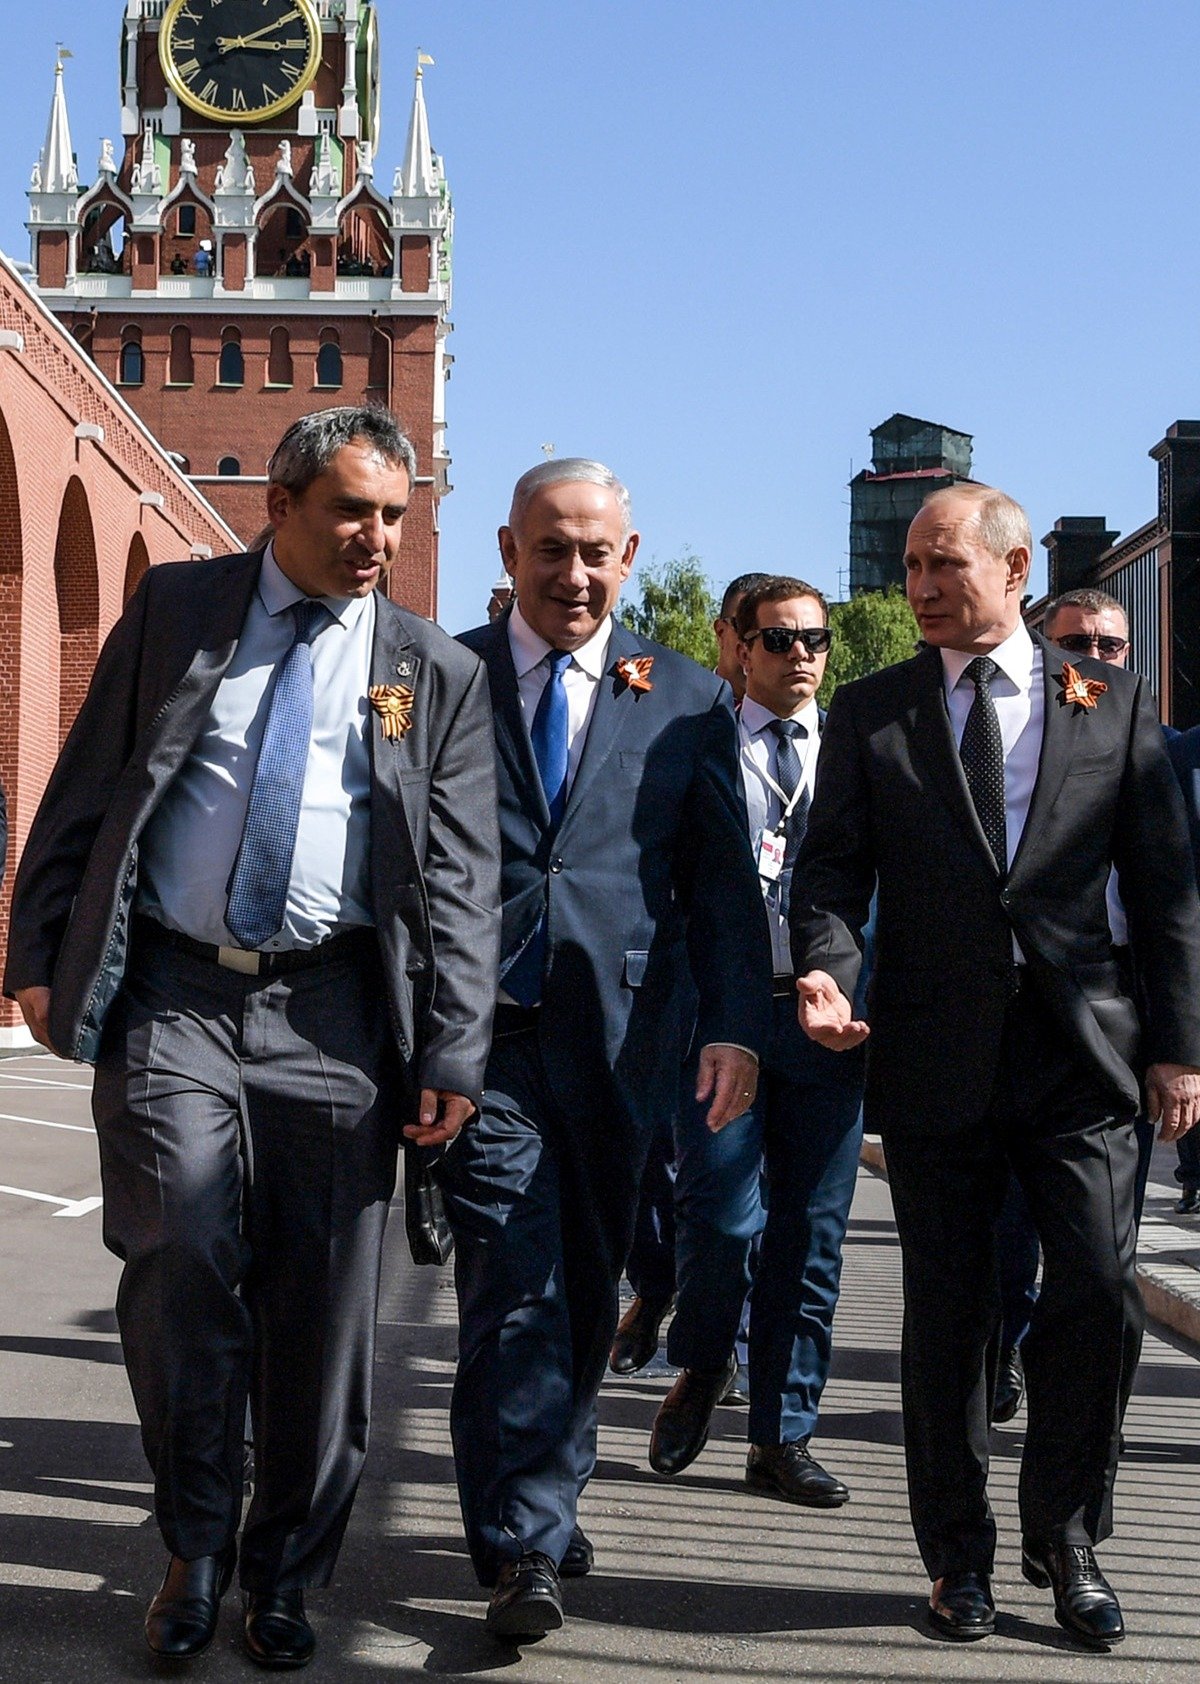 9 мая 2018 года. Зеэв Элькин, Биньямин Нетаньяху и Владимир Путин. Фото: Алексей Дружинин/ТАСС